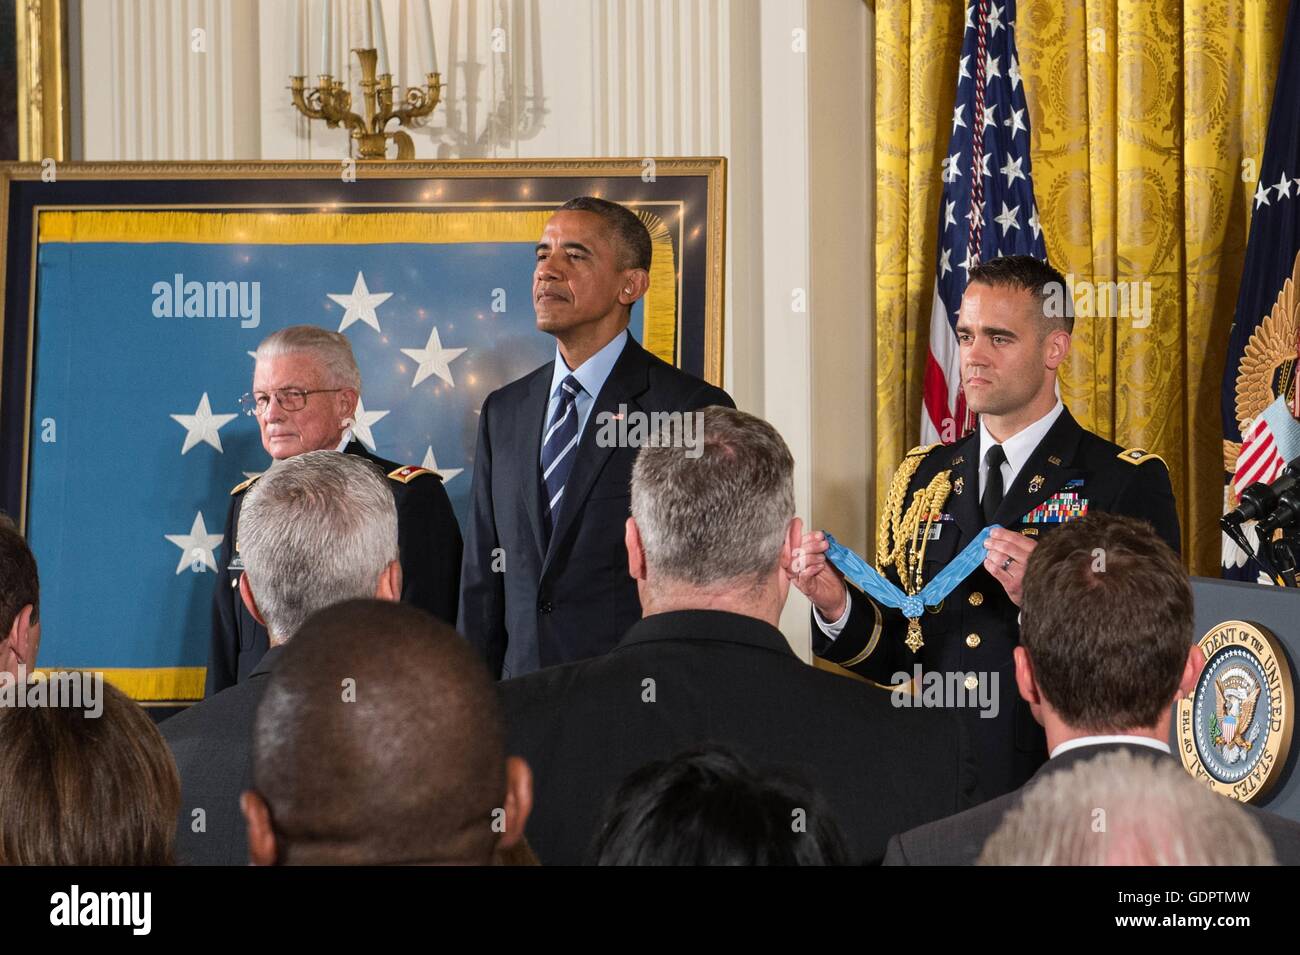 US-Präsident Barack Obama bereitet sich auf die Medal Of Honor pensionierte US Army Lieutenant Colonel Charles Kettles für auffallende Edelmut im Rahmen einer Feierstunde im East Room des weißen Hauses 18. Juli 2016 in Washington, DC zu präsentieren. Kessel ist mit der Rettung von 40 Soldaten in Kampfhandlungen in der Nähe von Duc Pho, Vietnam, am 15. Mai 1967 gutgeschrieben. Stockfoto